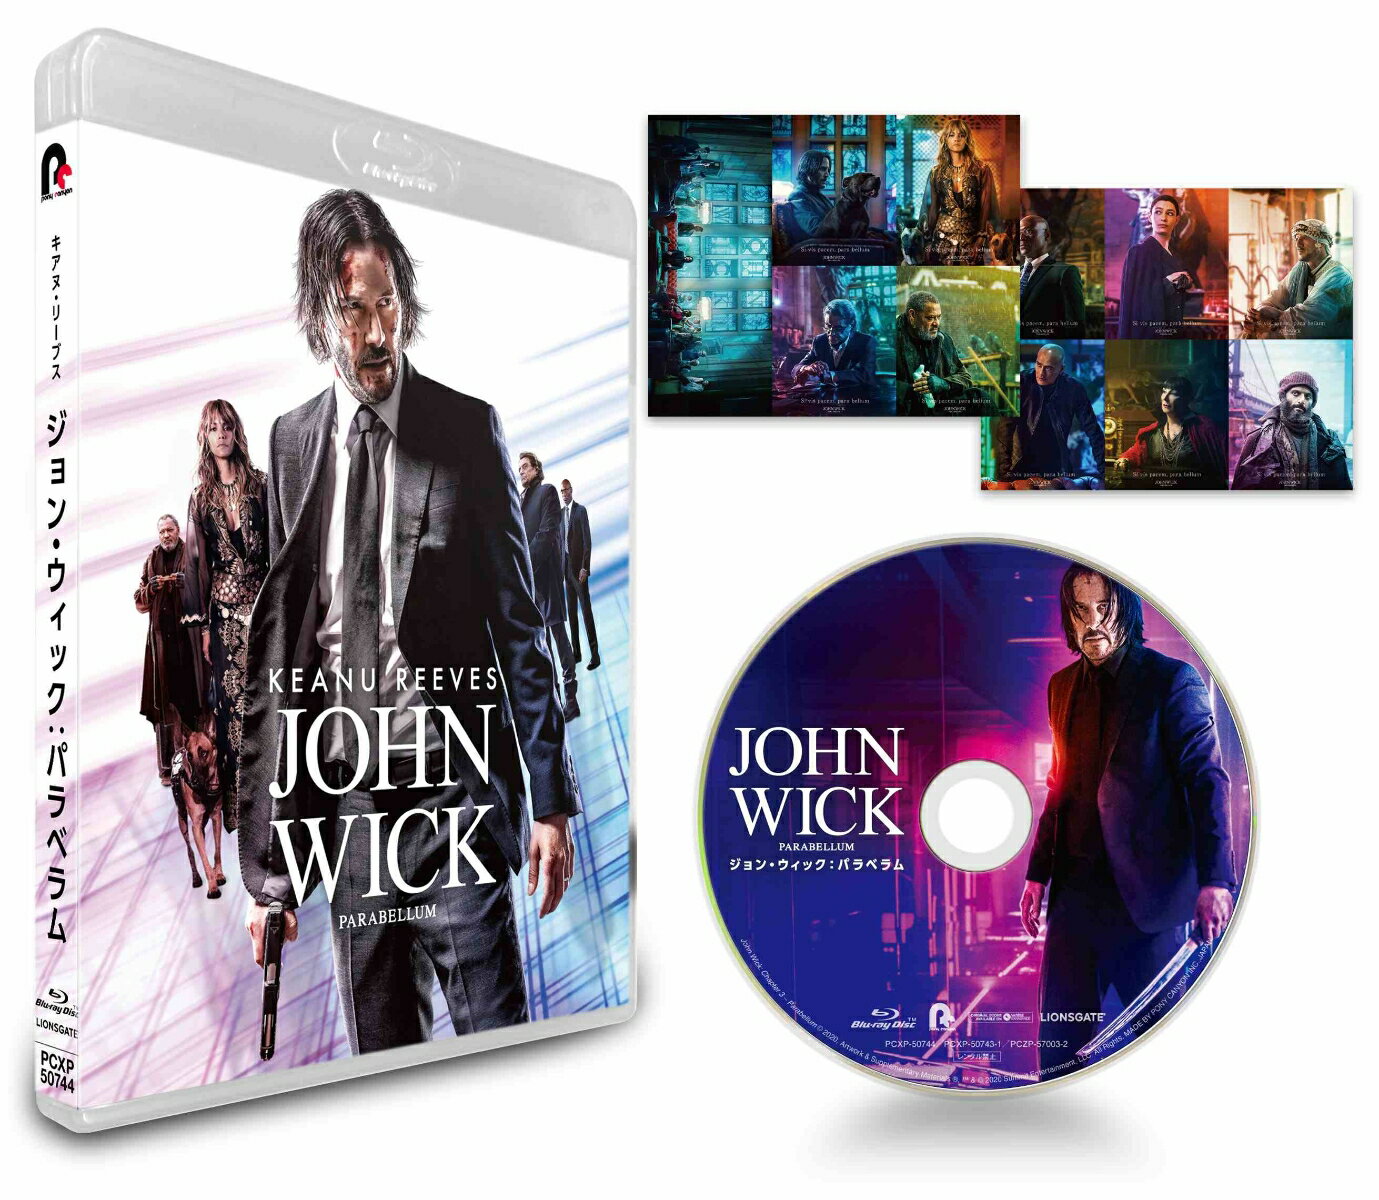 ジョン・ウィック:パラベラム【Blu-ray】